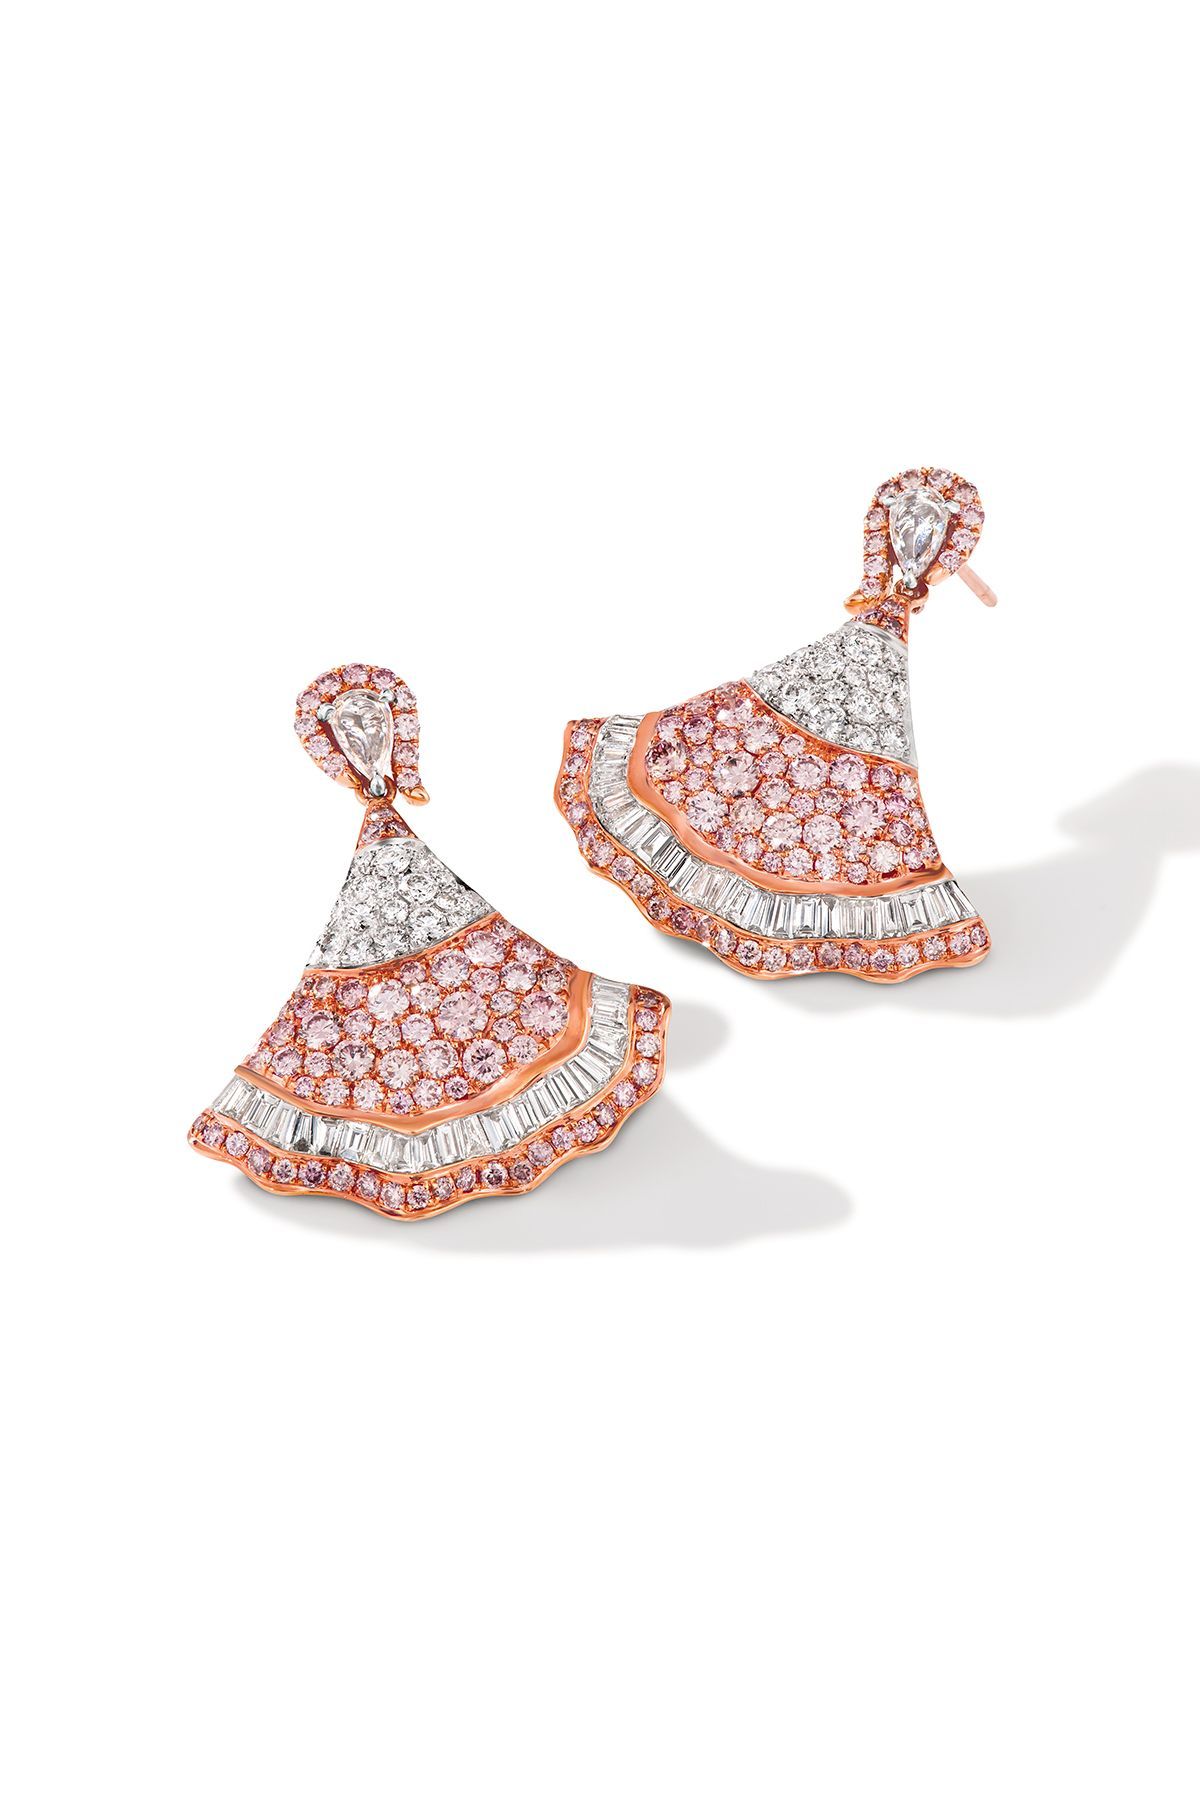 Pink Diamond Ballerina Skirt Earrings